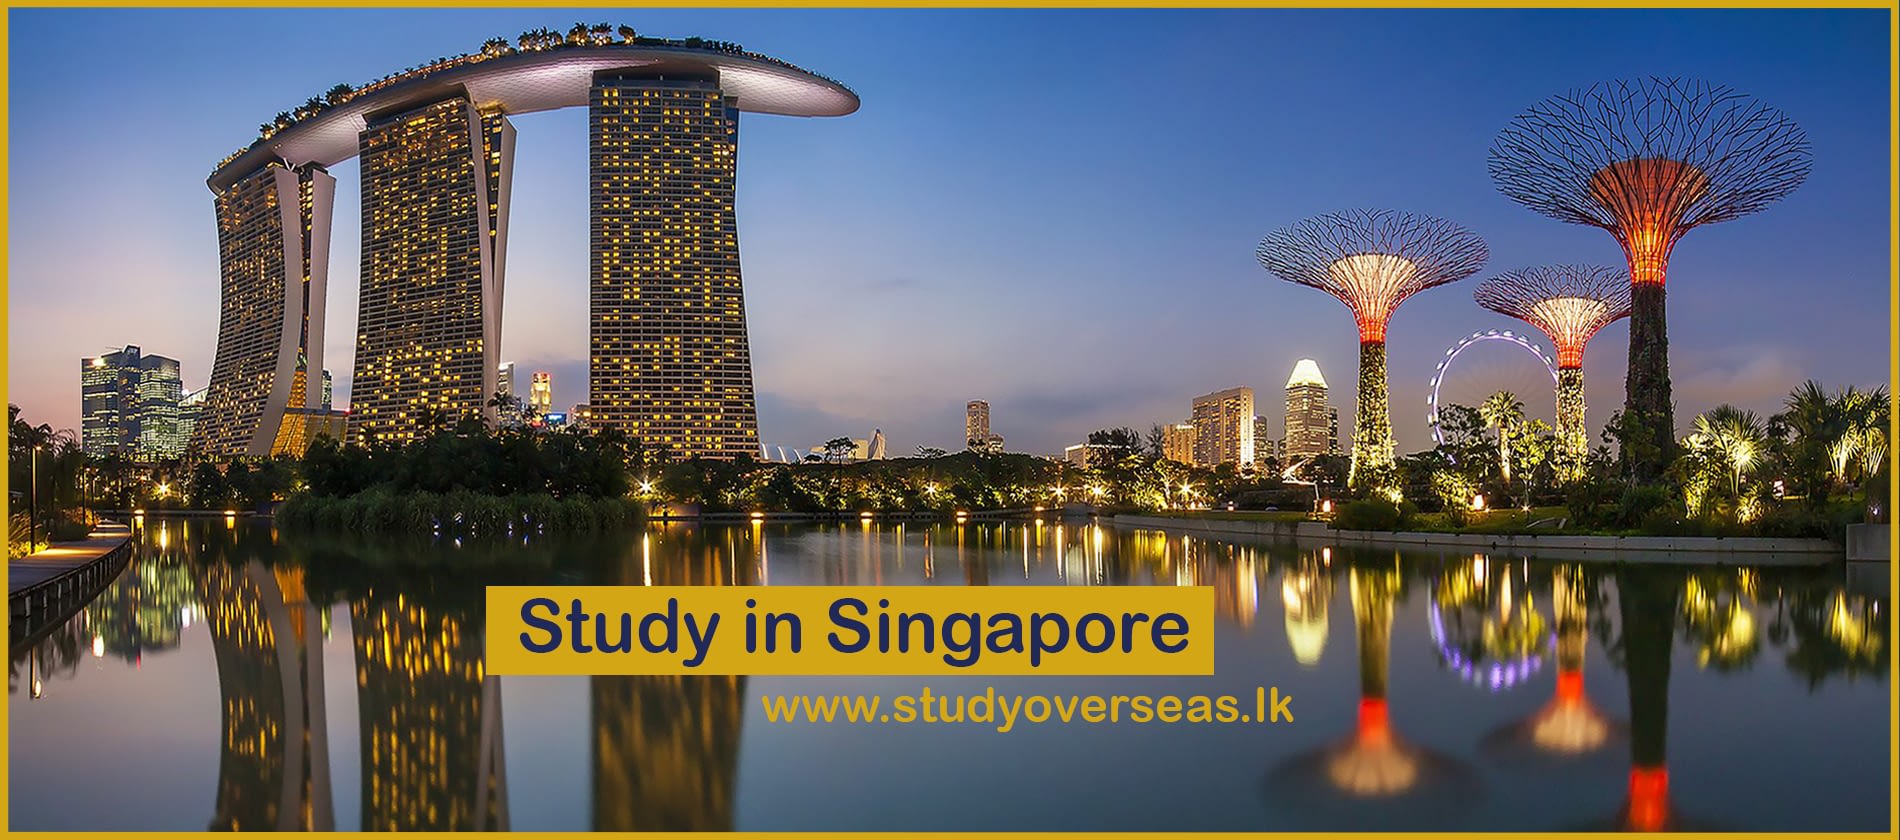 study_in_singapore_www.studyoverseas.lk